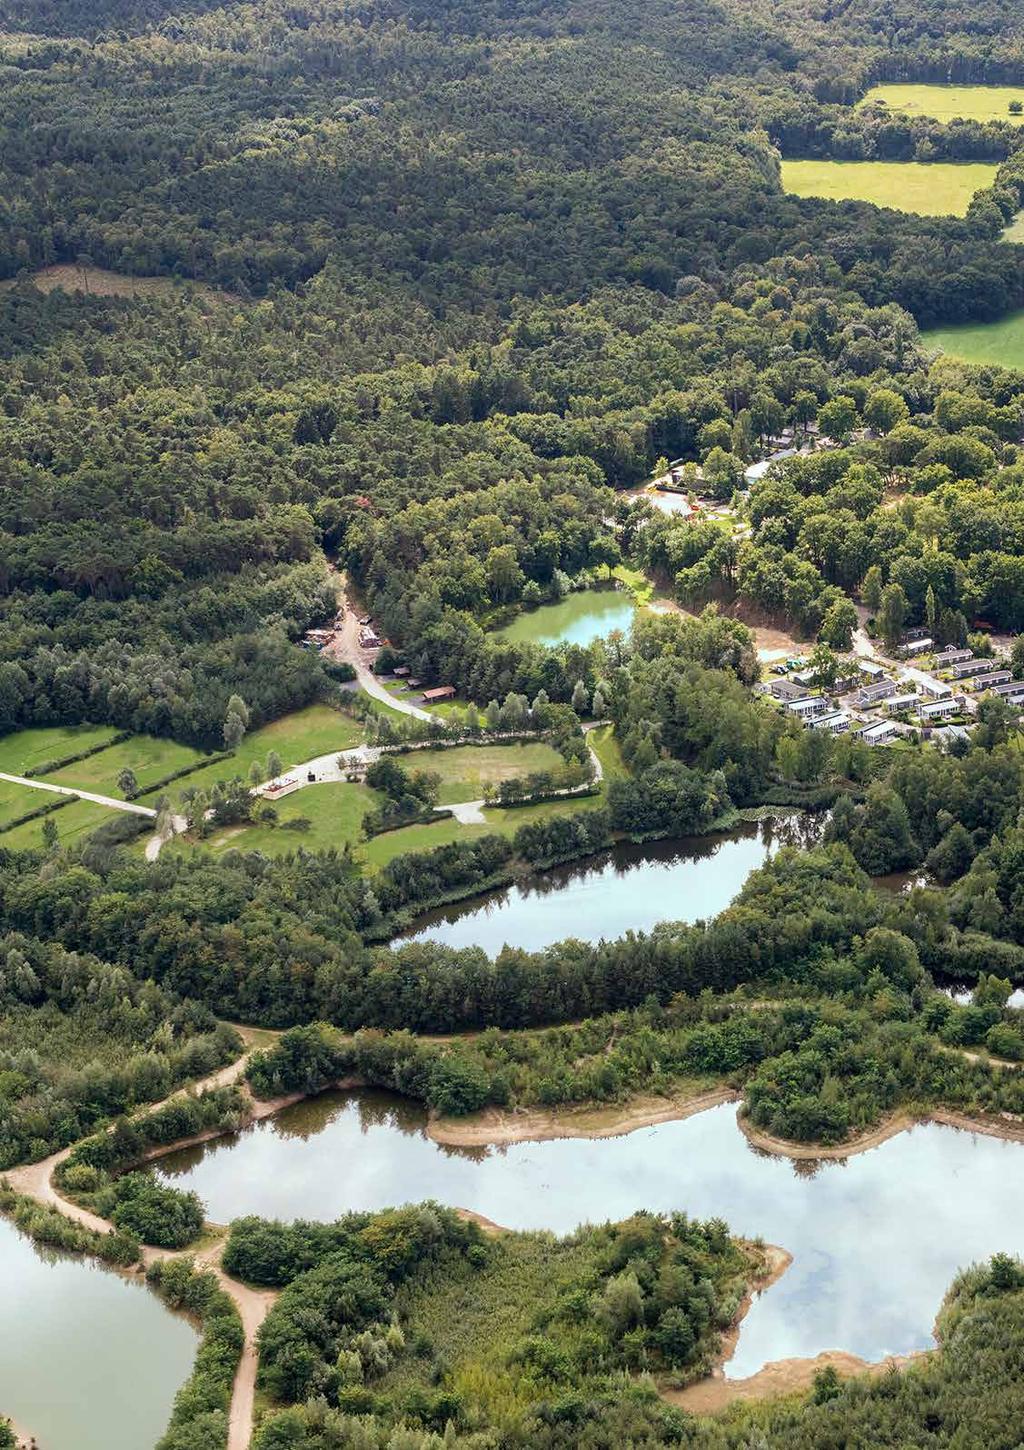 DROOMPARK MAASDUINEN: SMAAKVOLLE OPZET, GEWELDIGE LIGGING De Limburgse natuur heeft een speciale status in